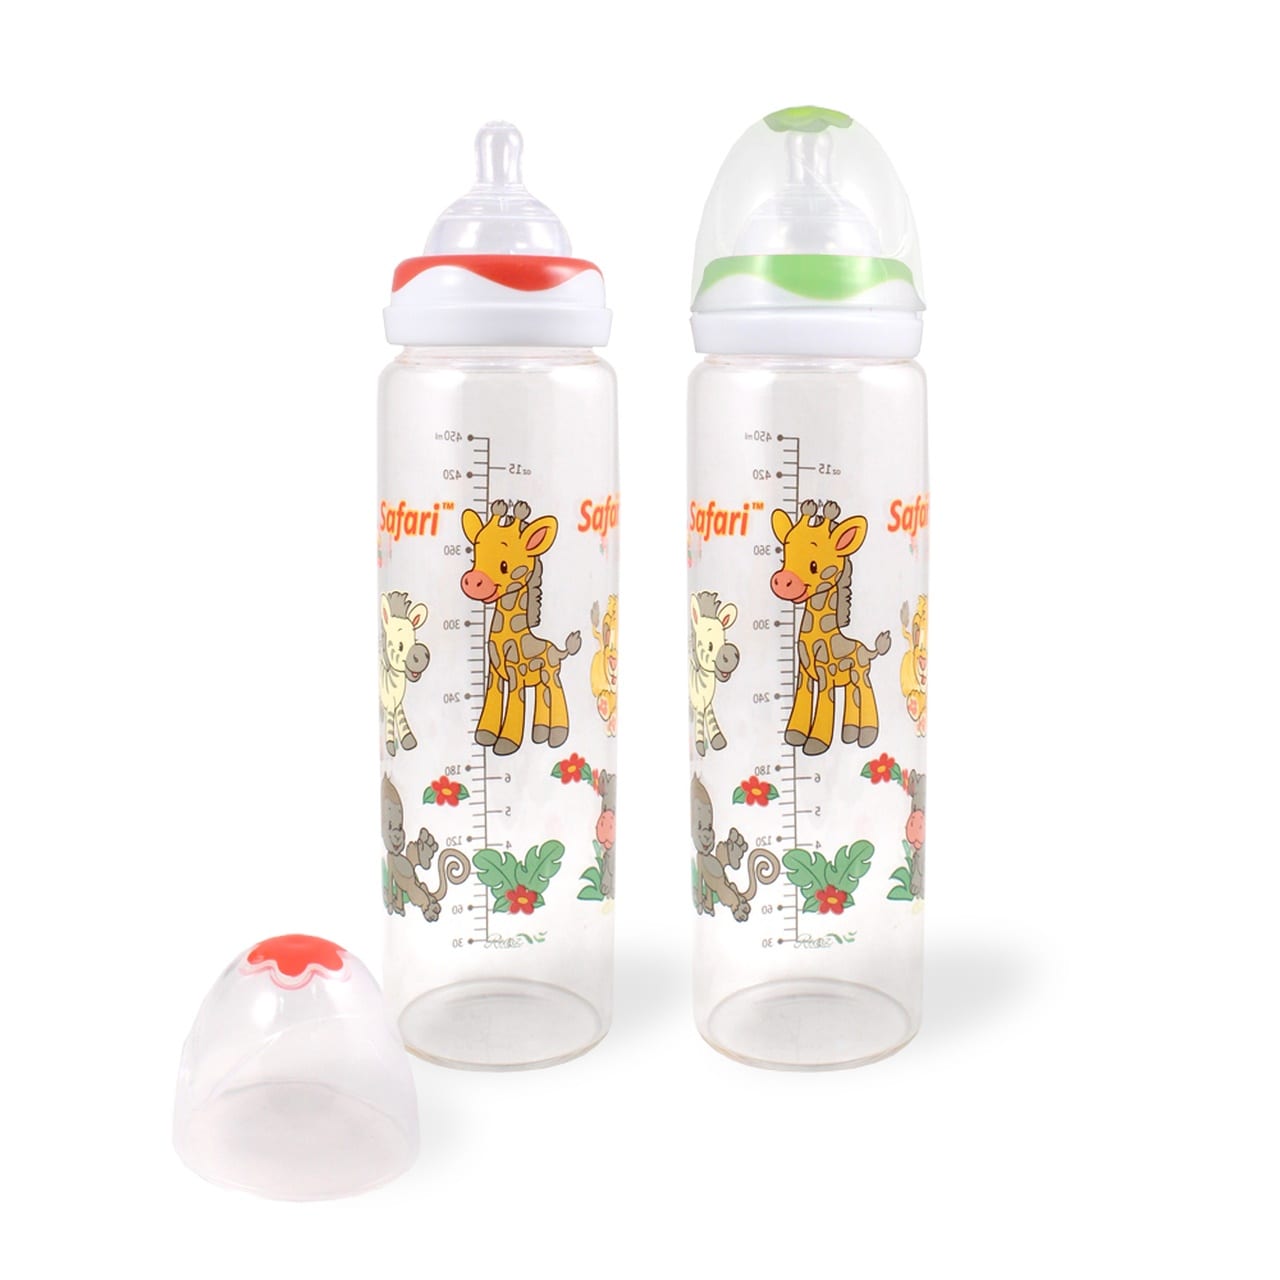 Rearz Safari Glass Adult Baby Bottle